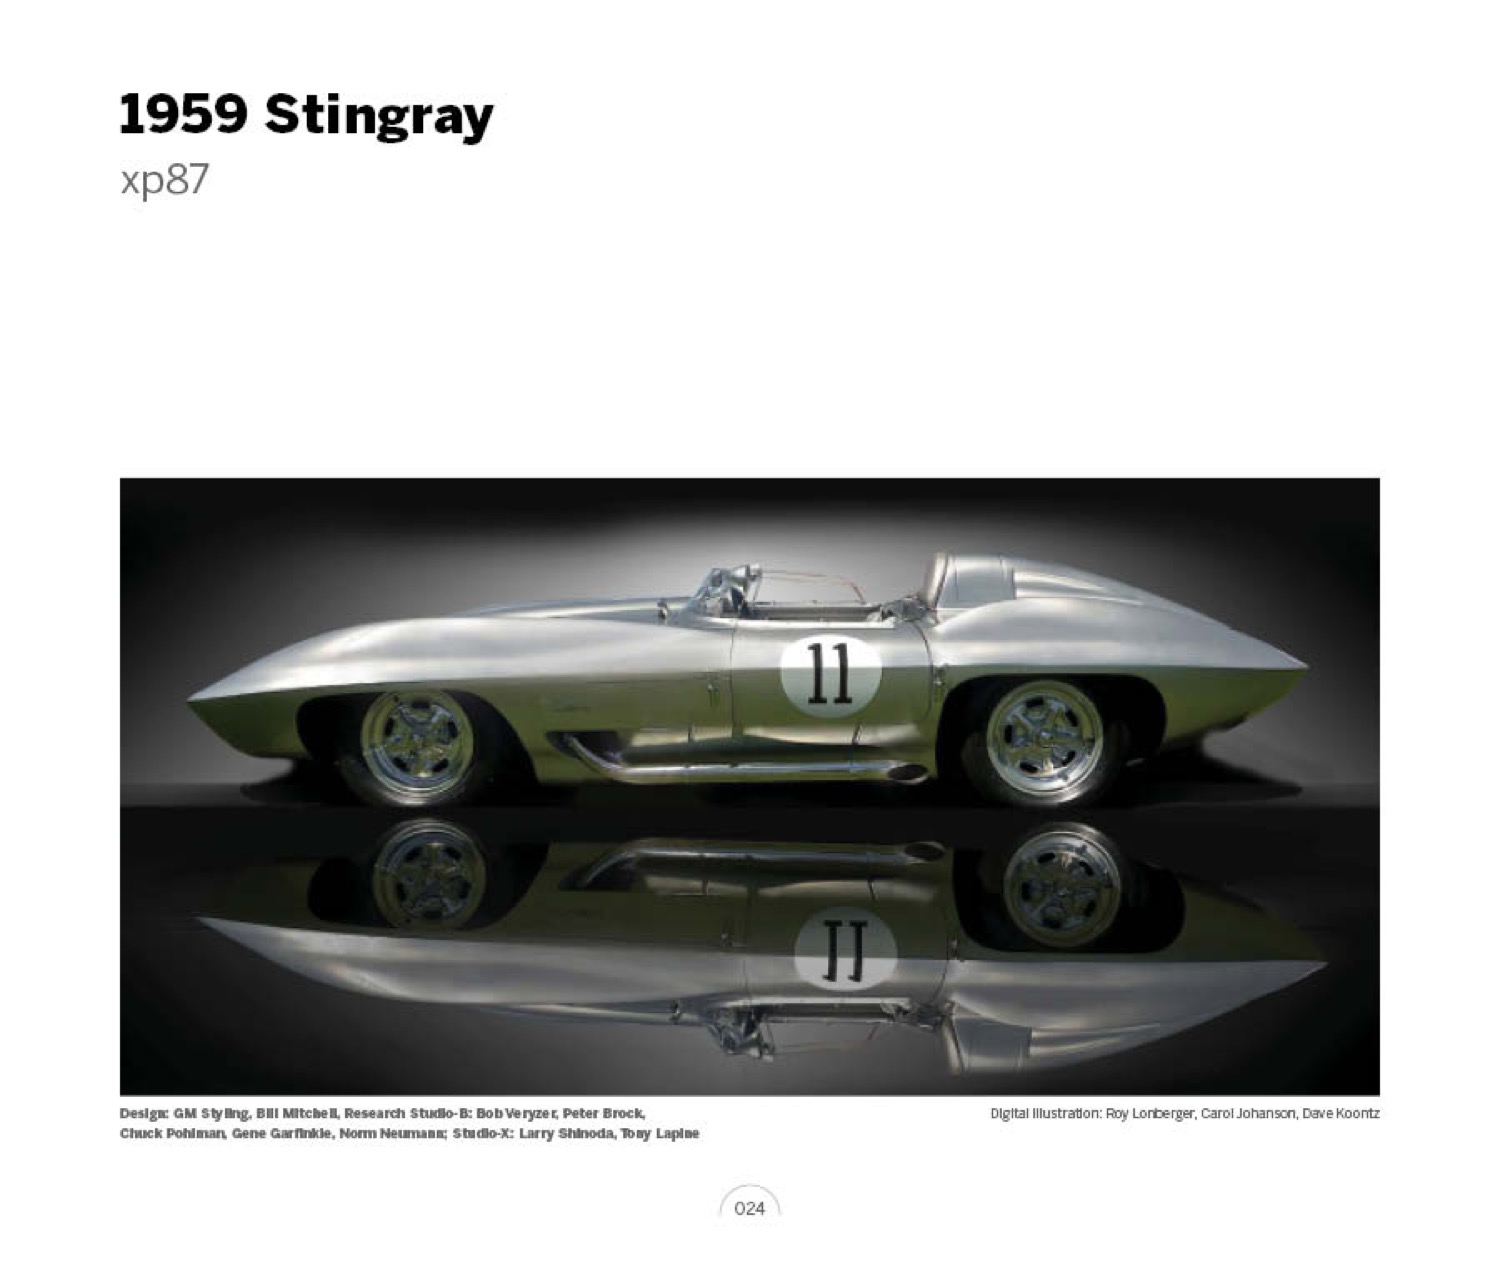 (03) 1959 Stingray xp87 LoRez.jpg